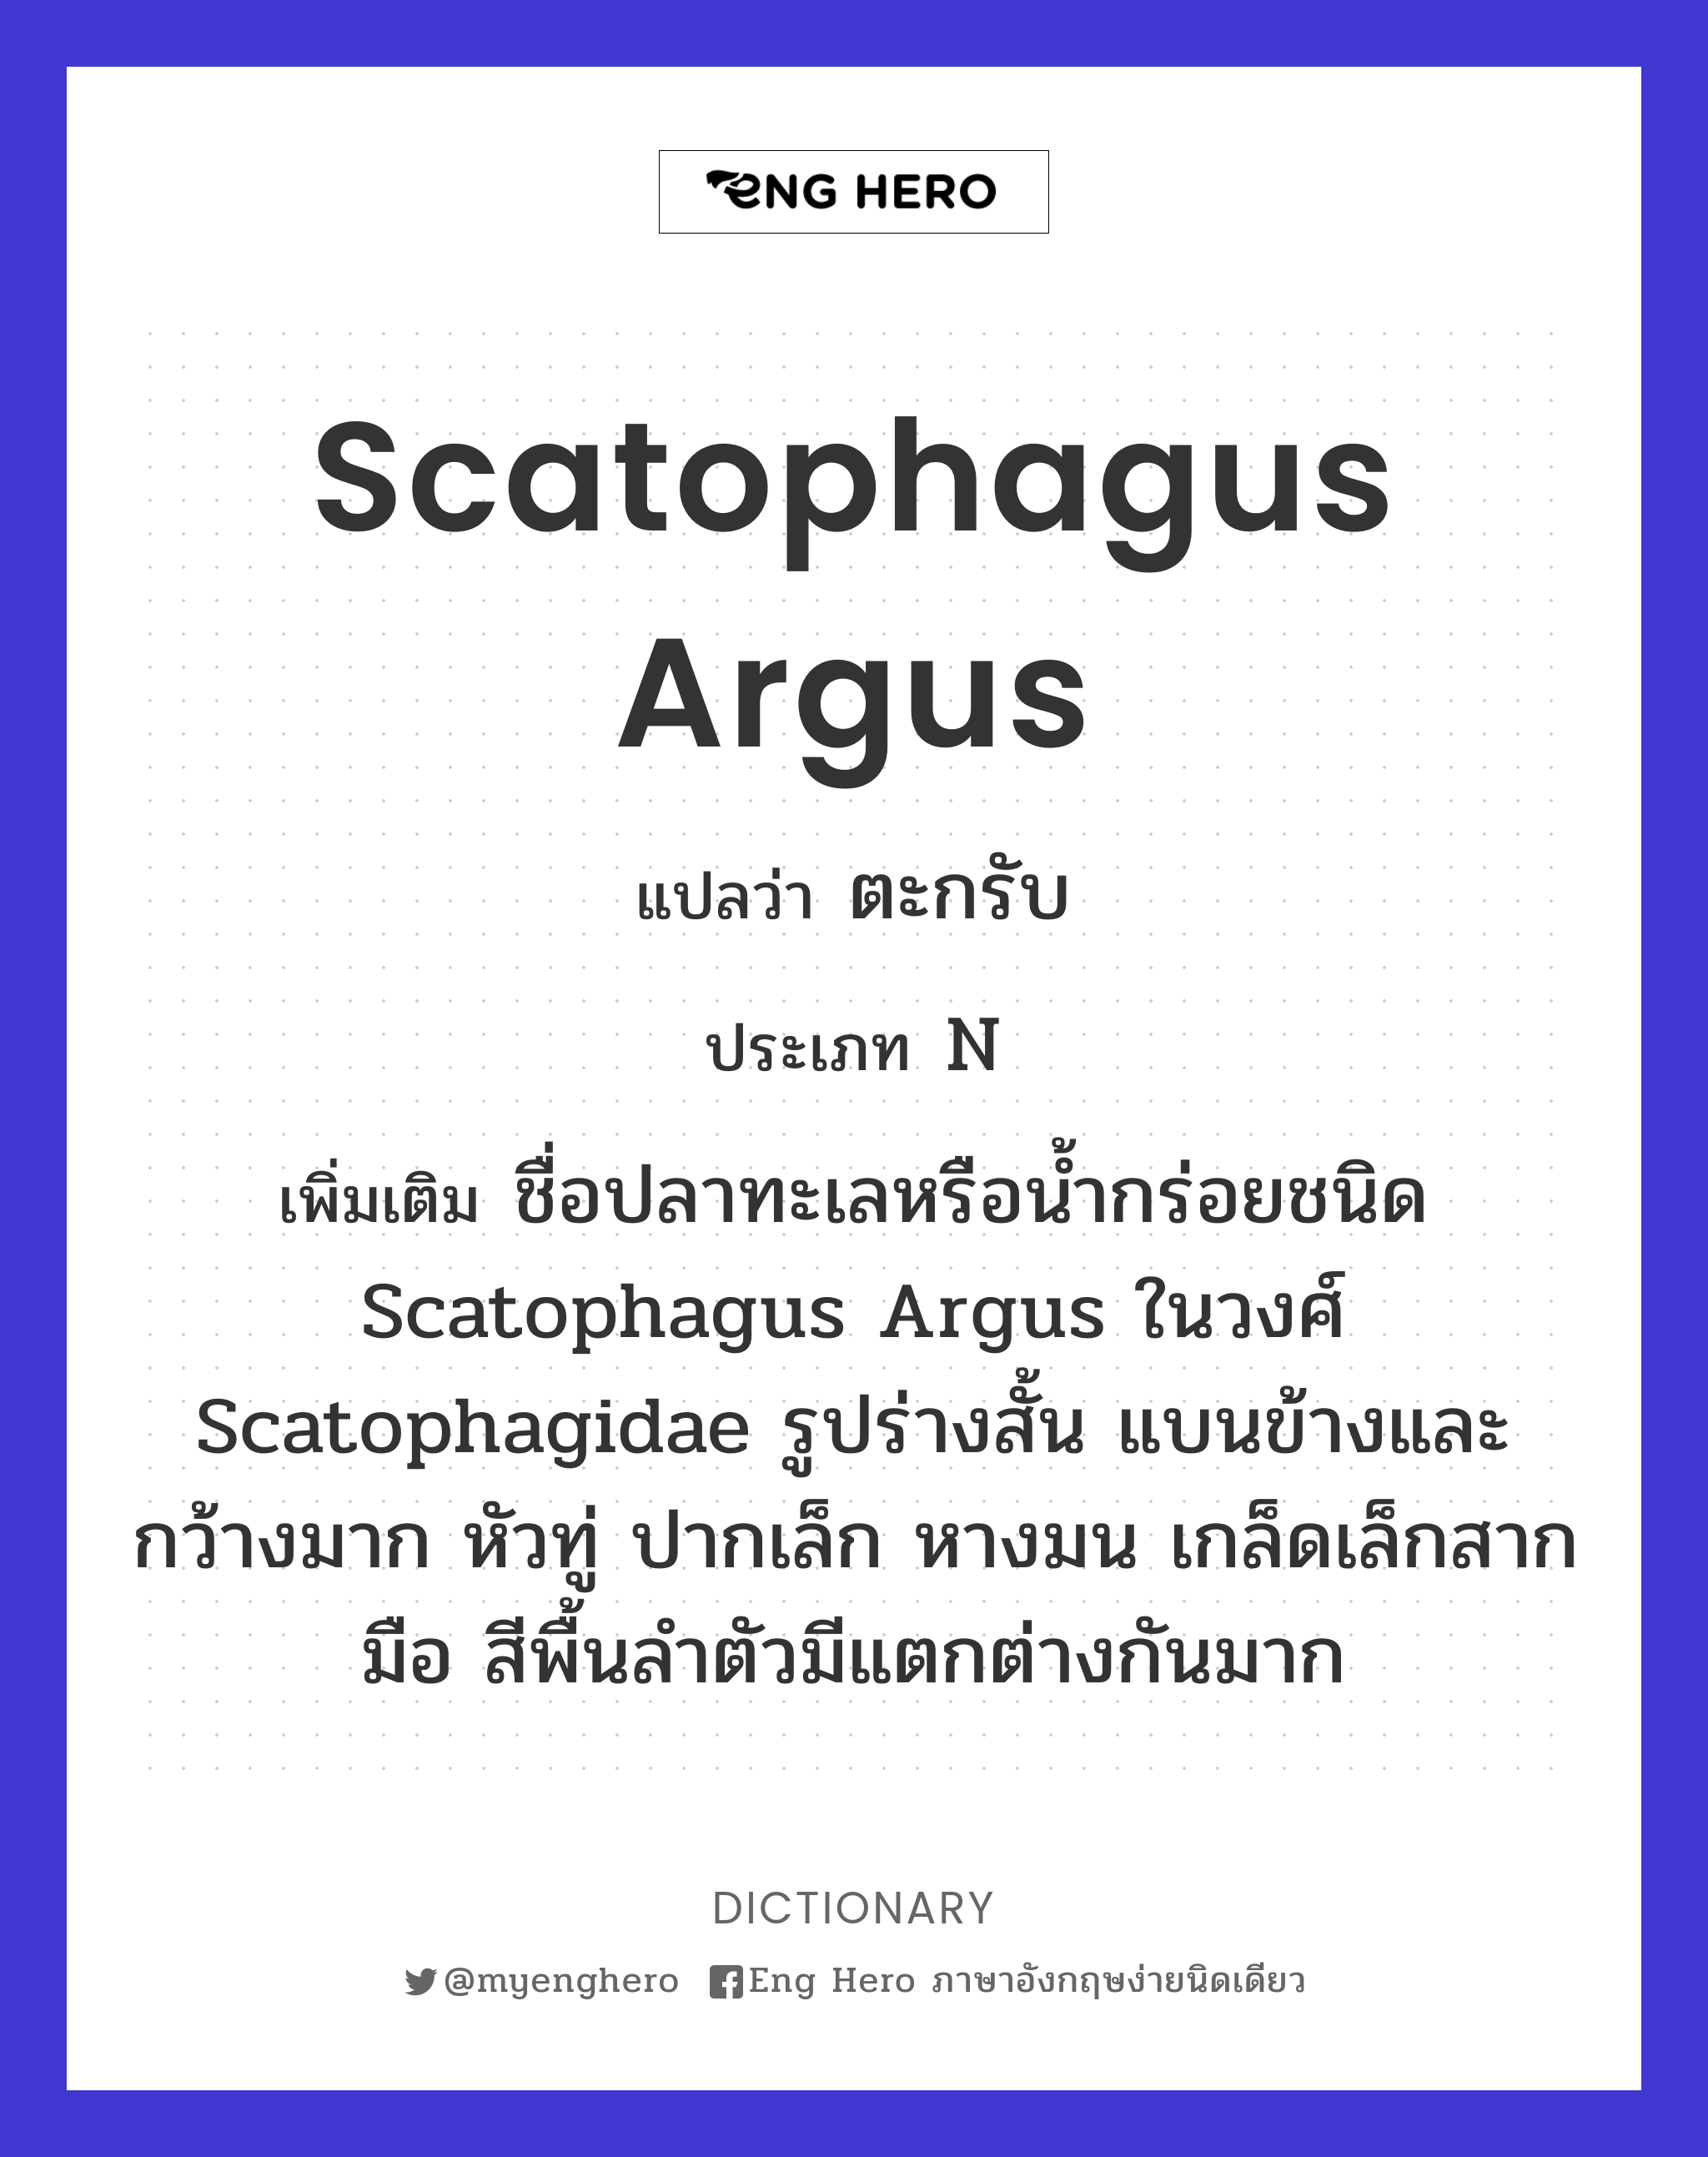 Scatophagus argus